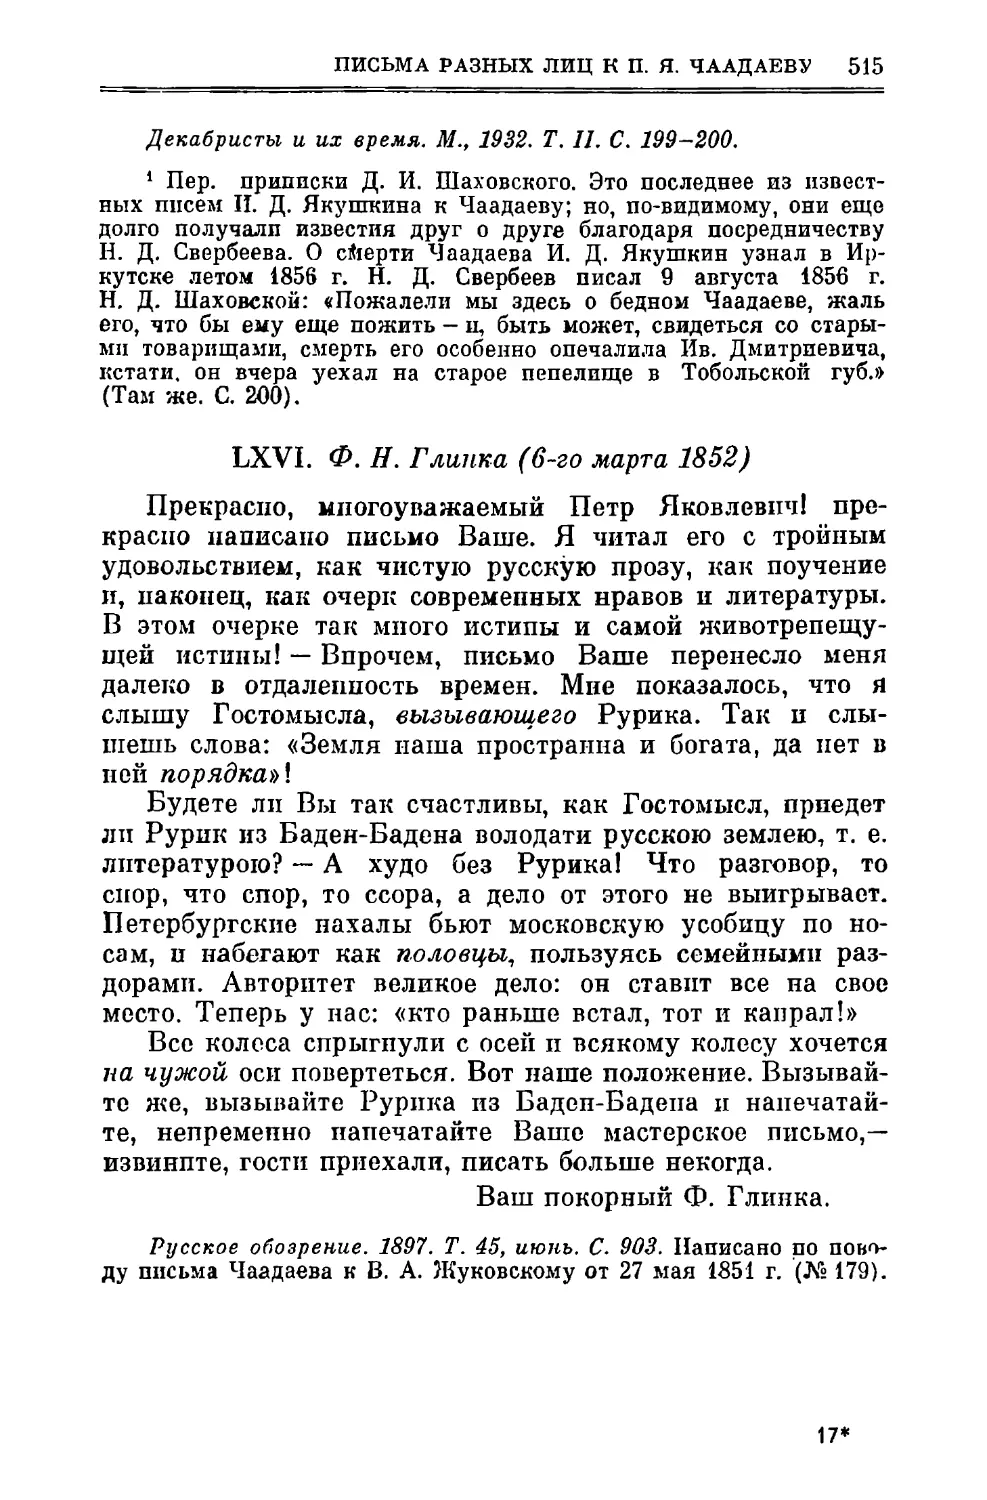 LXVI. Глинка Ф.H. 6.III.1852